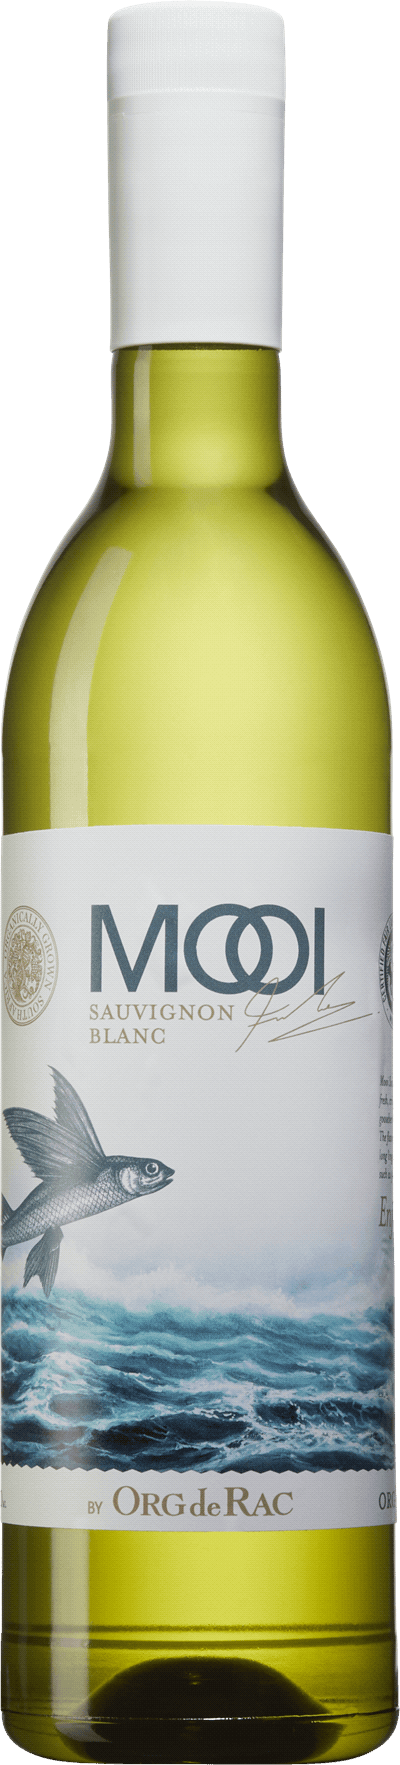 Mooi by Org de Rac Sauvignon Blanc